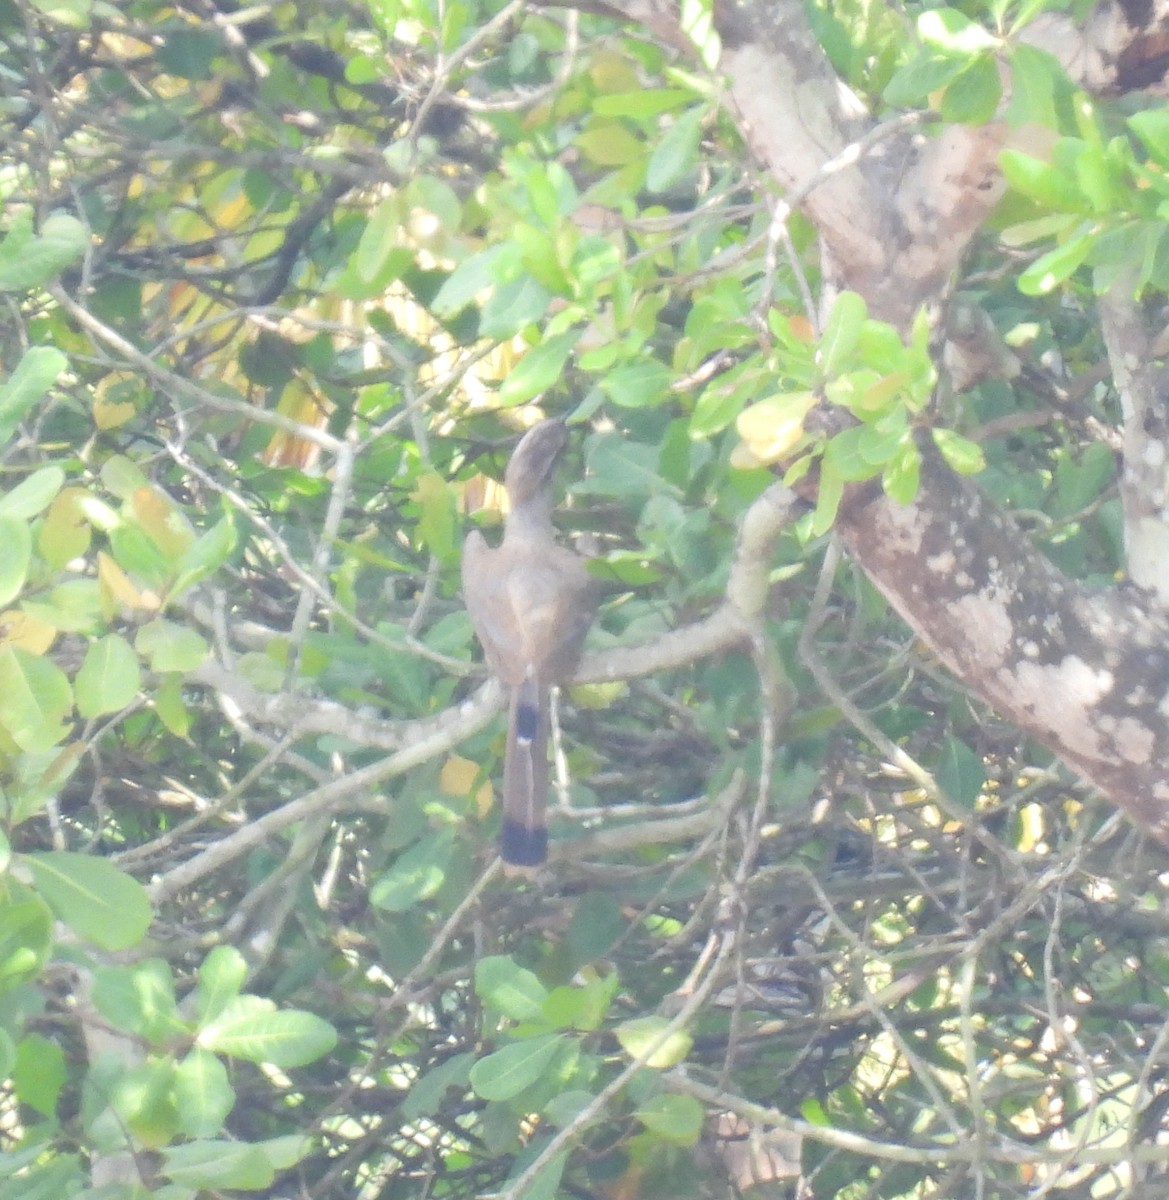 Malabar Gray Hornbill - Rama M V